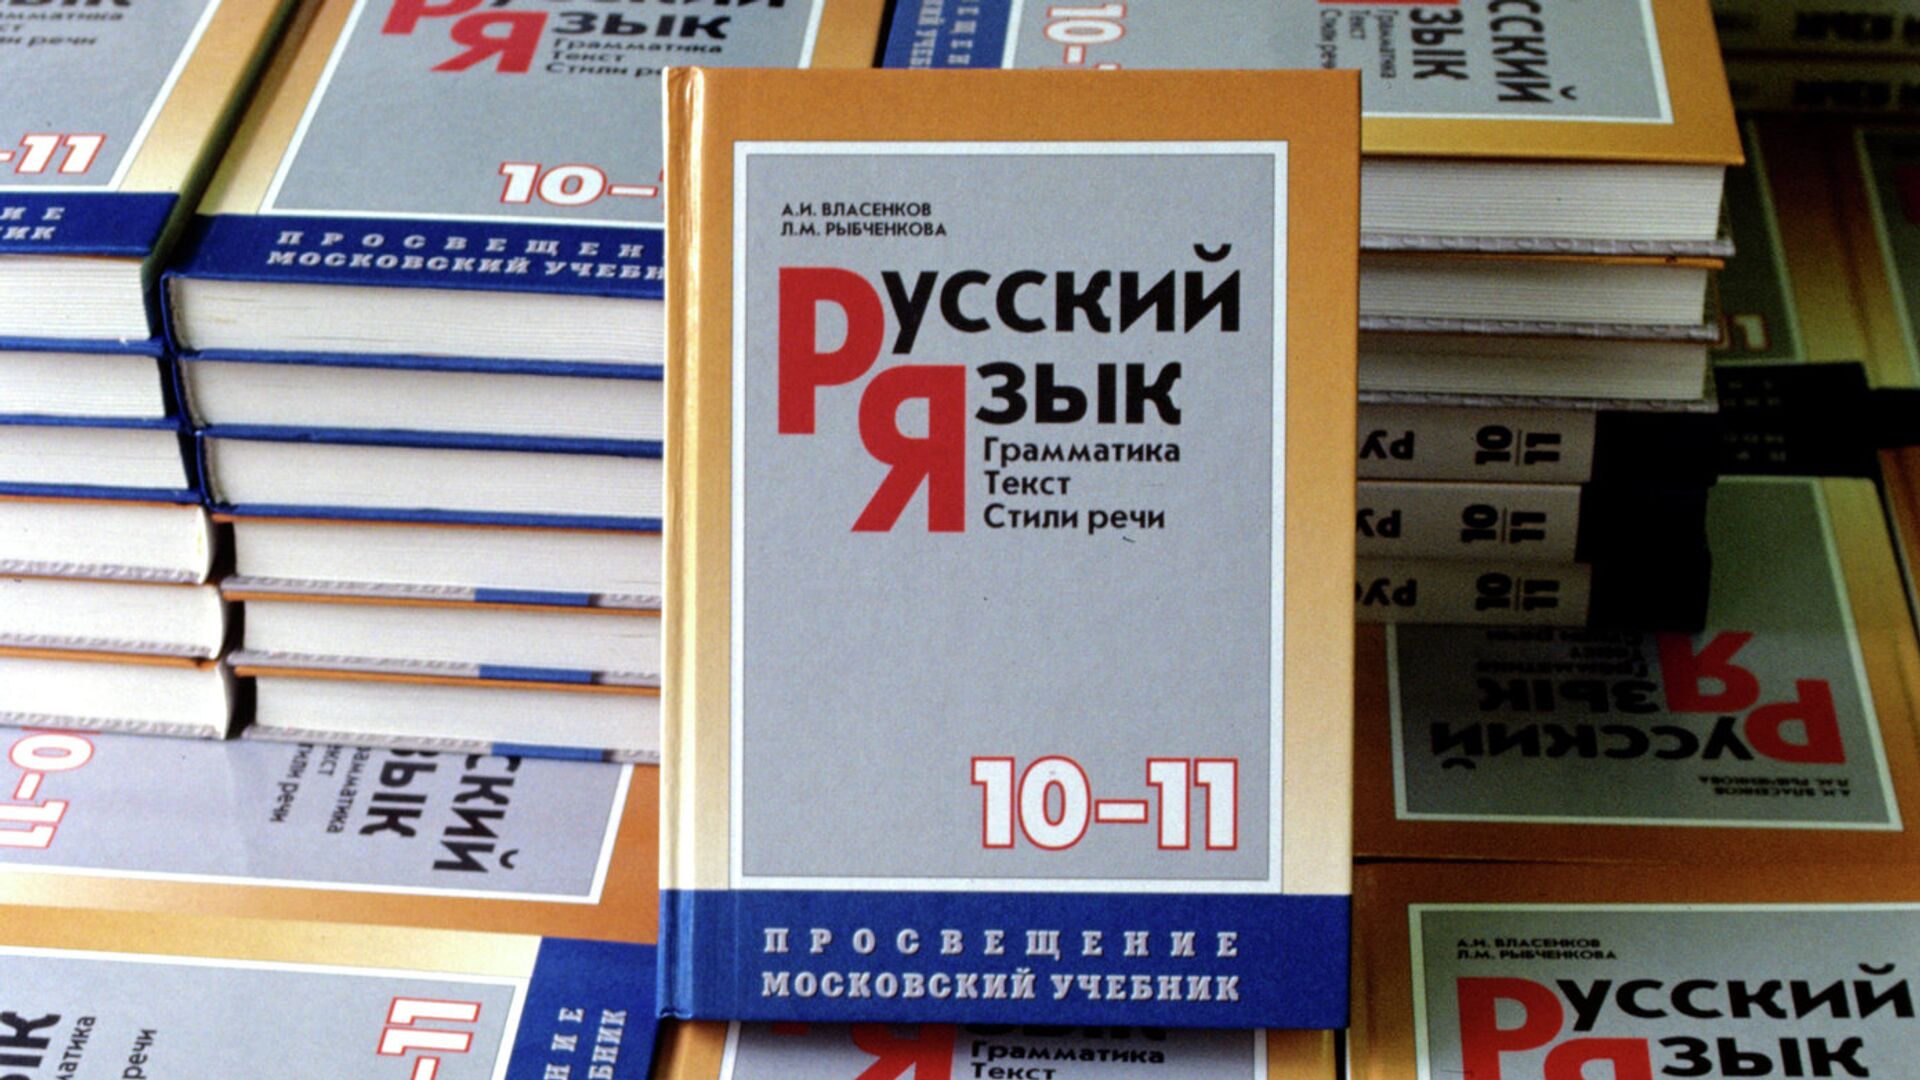 Учебник русского языка 10-11 класса - Sputnik Грузия, 1920, 03.04.2022